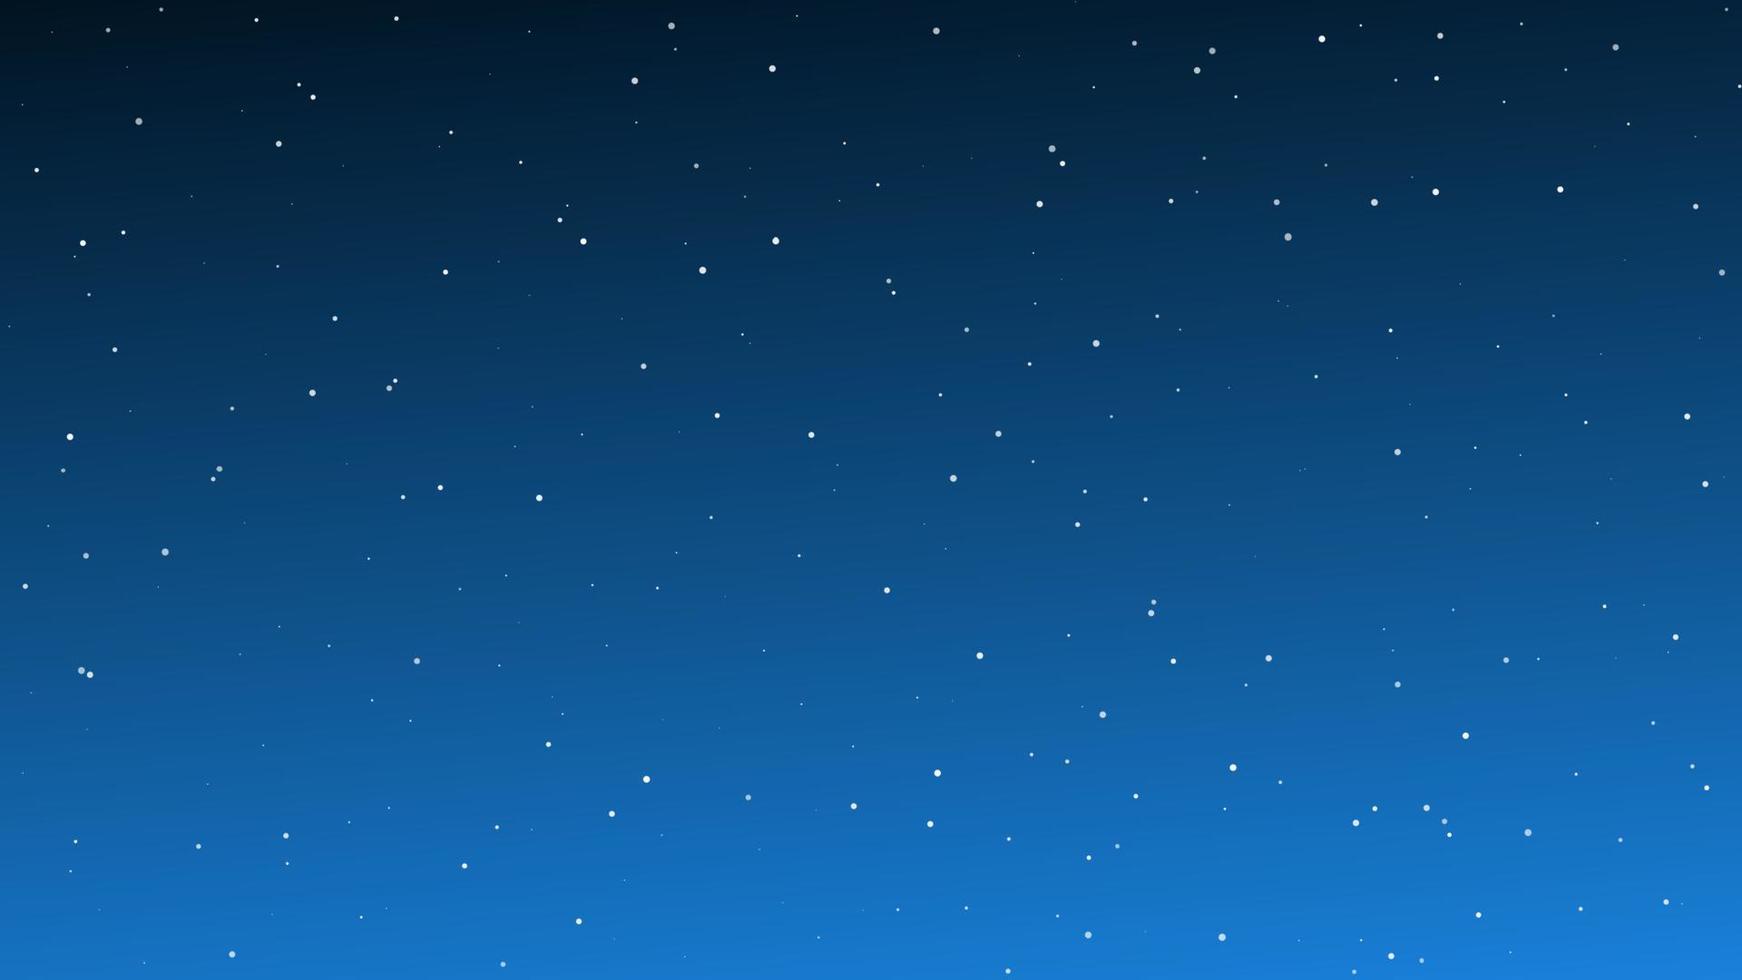 ciel nocturne avec de nombreuses étoiles. fond de nature abstraite avec poussière d'étoiles dans l'univers profond. illustration vectorielle. vecteur